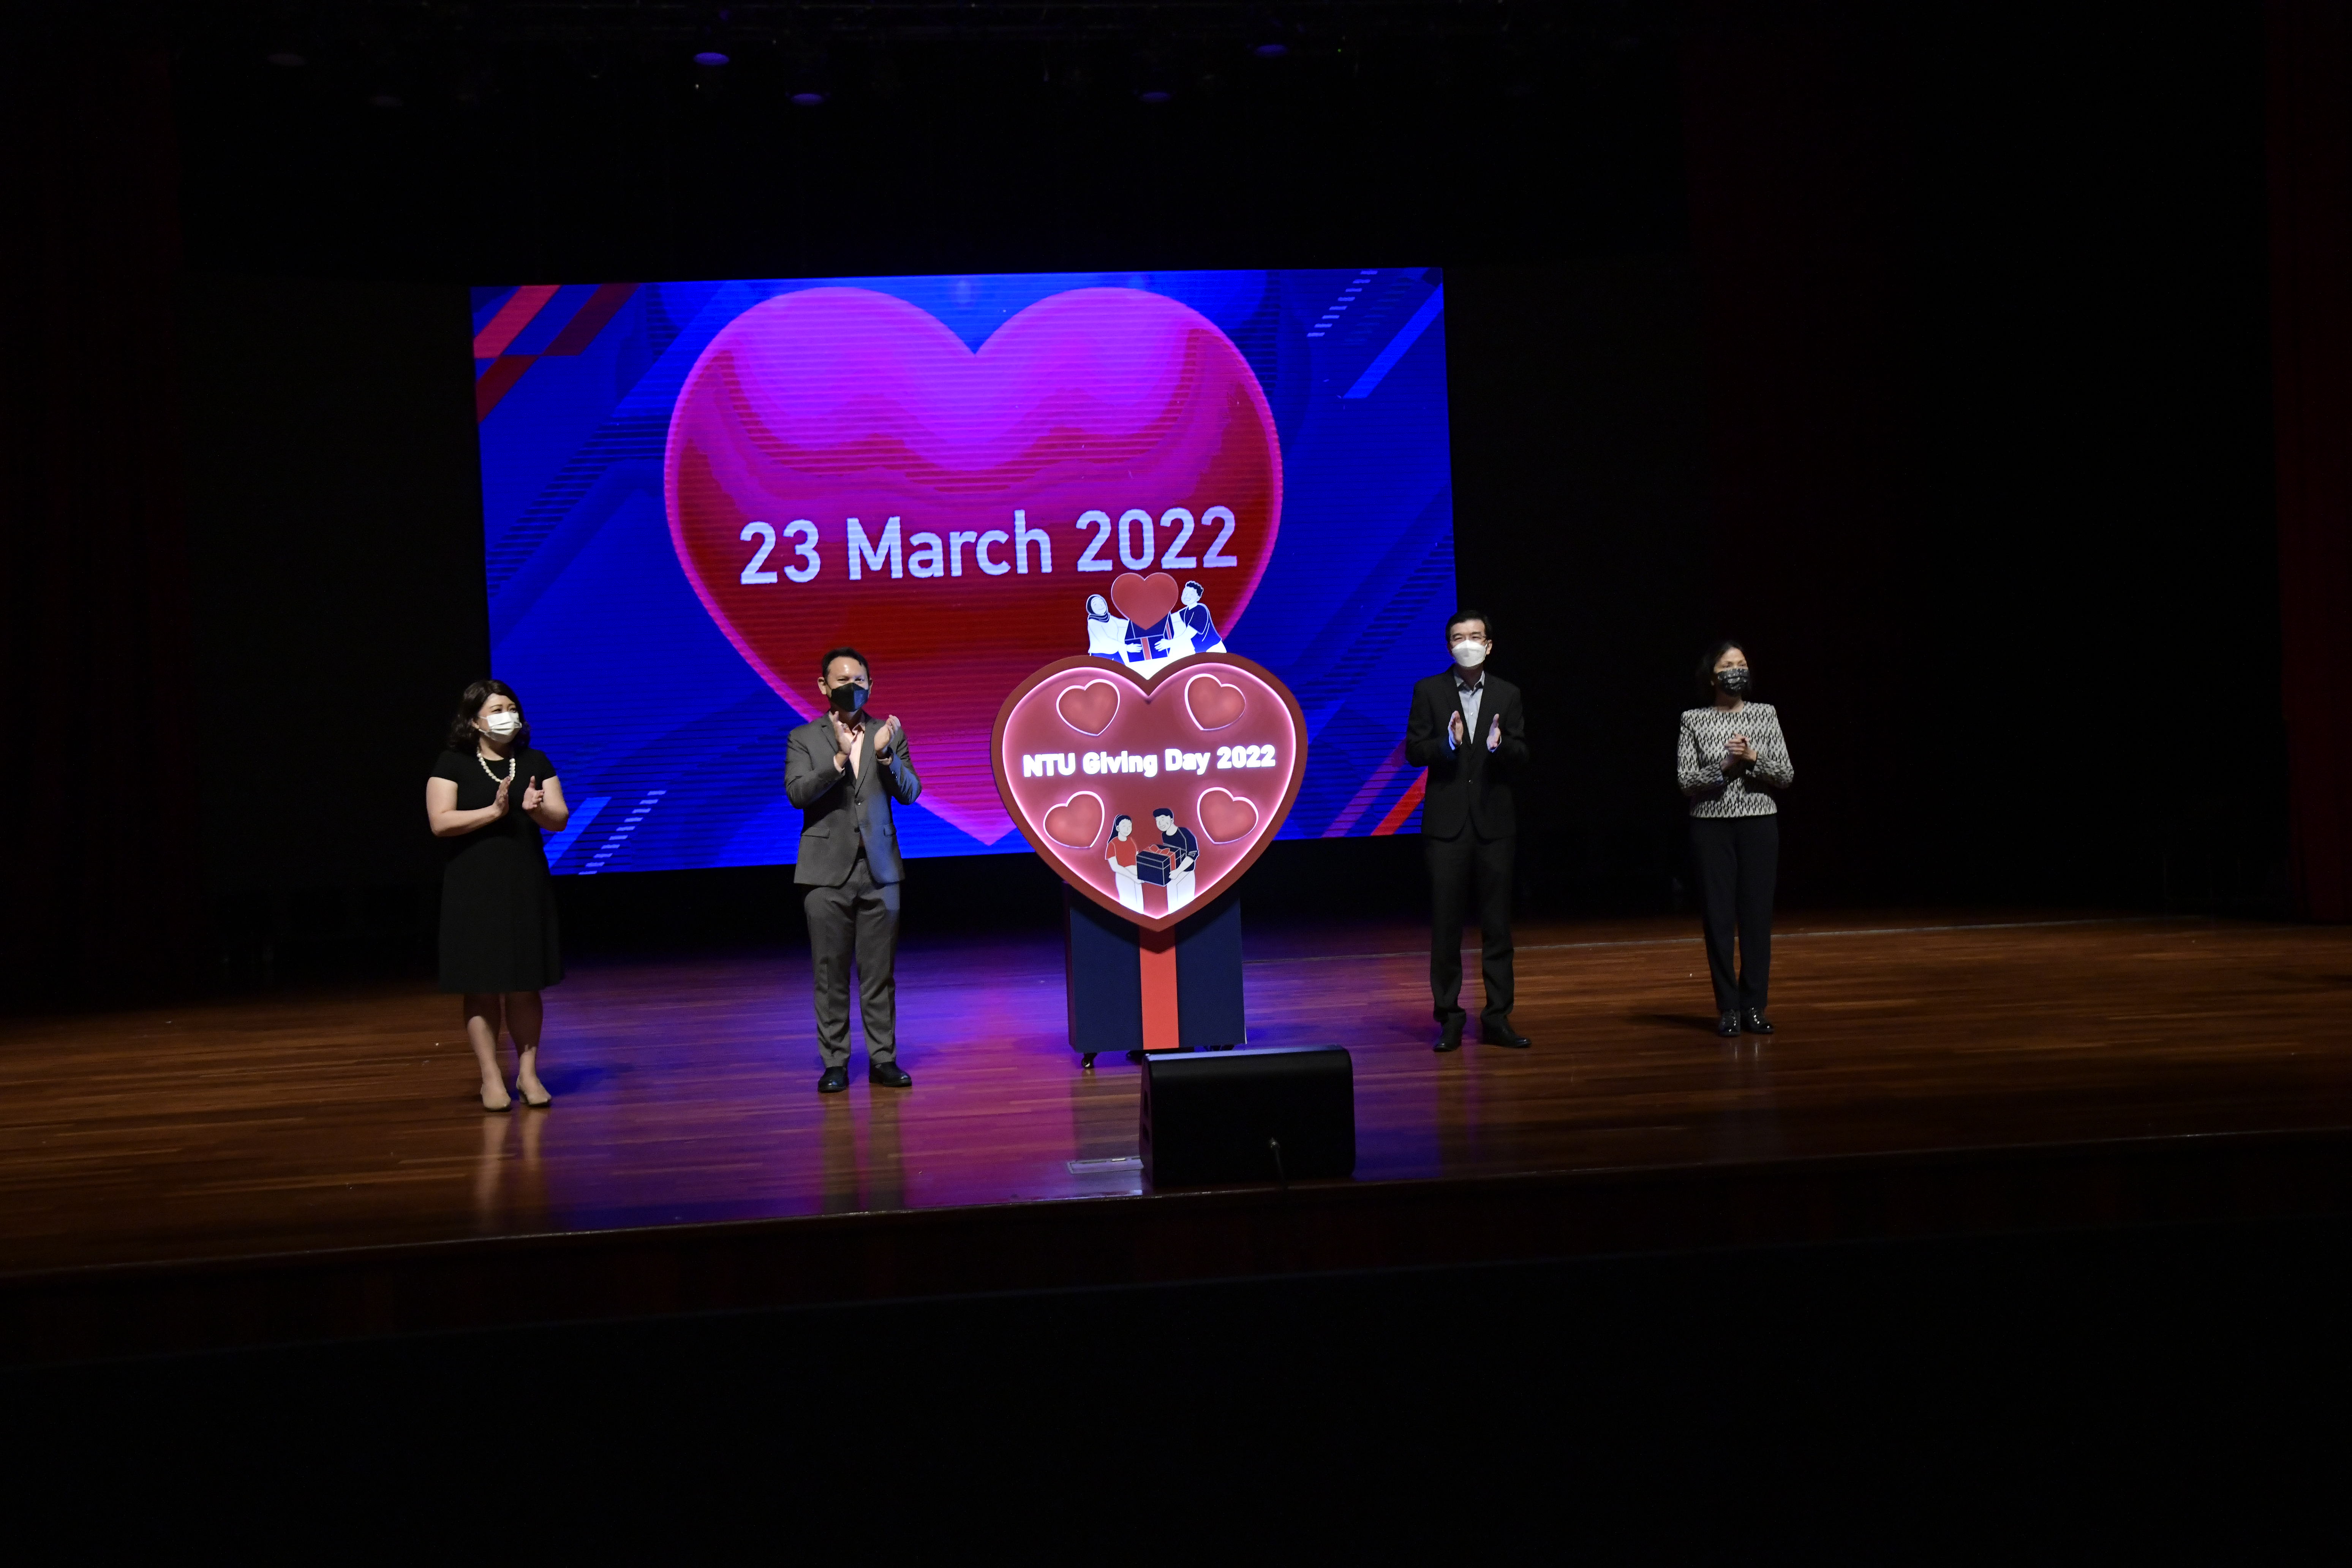 NTU Giving Day 2022 launch